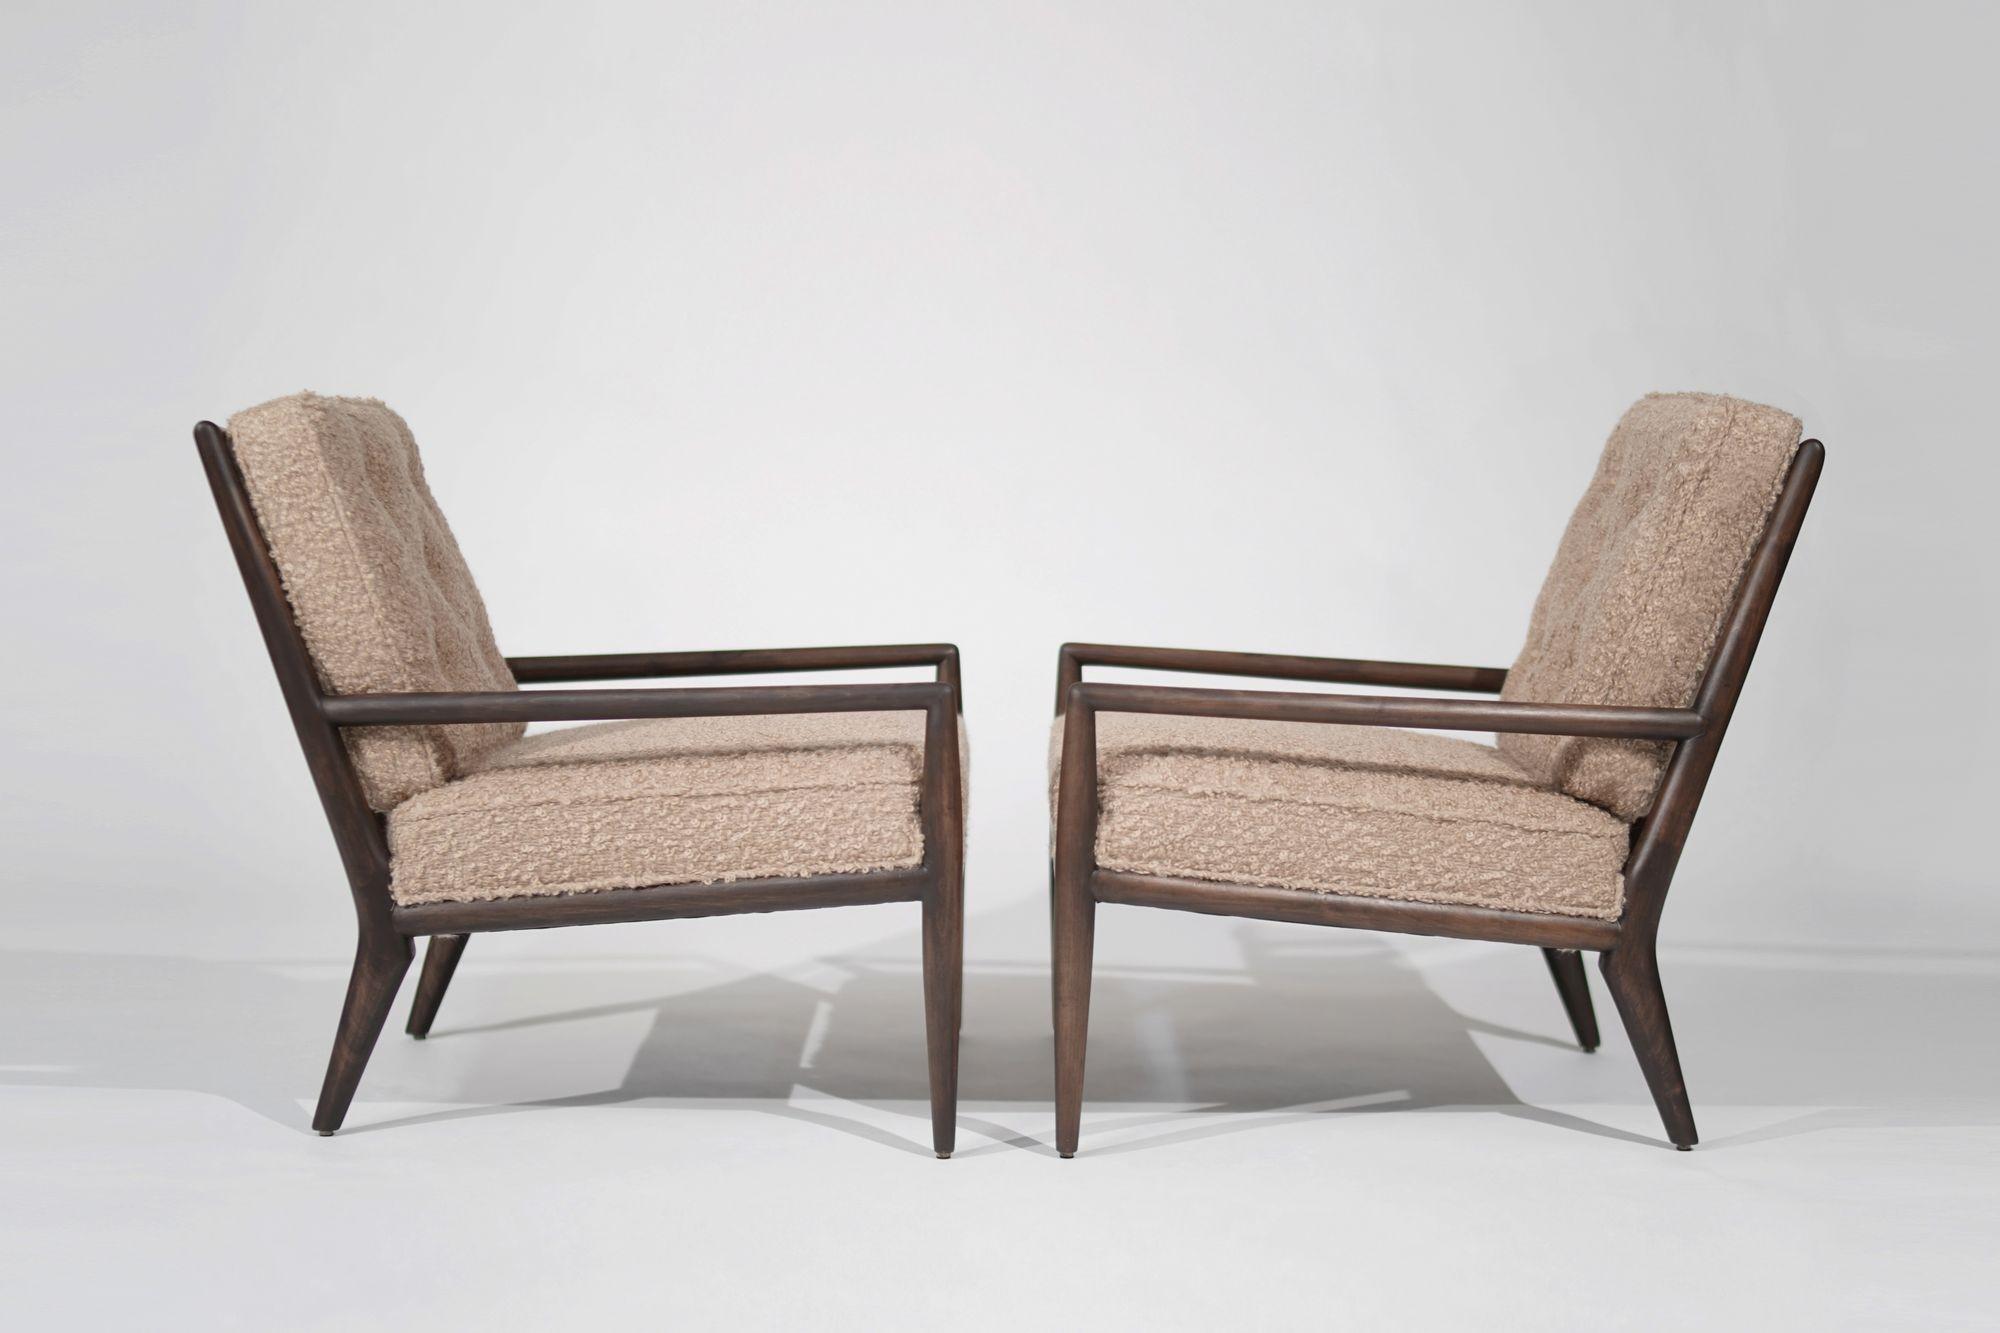 Découvrez l'élégance intemporelle du design moderne du milieu du siècle avec cet ensemble exquis de chaises longues, conçu par le célèbre T.H. Robsjohn-Gibbings pour Widdicomb. Fabriquées vers 1950-1959, ces chaises allient parfaitement la forme et